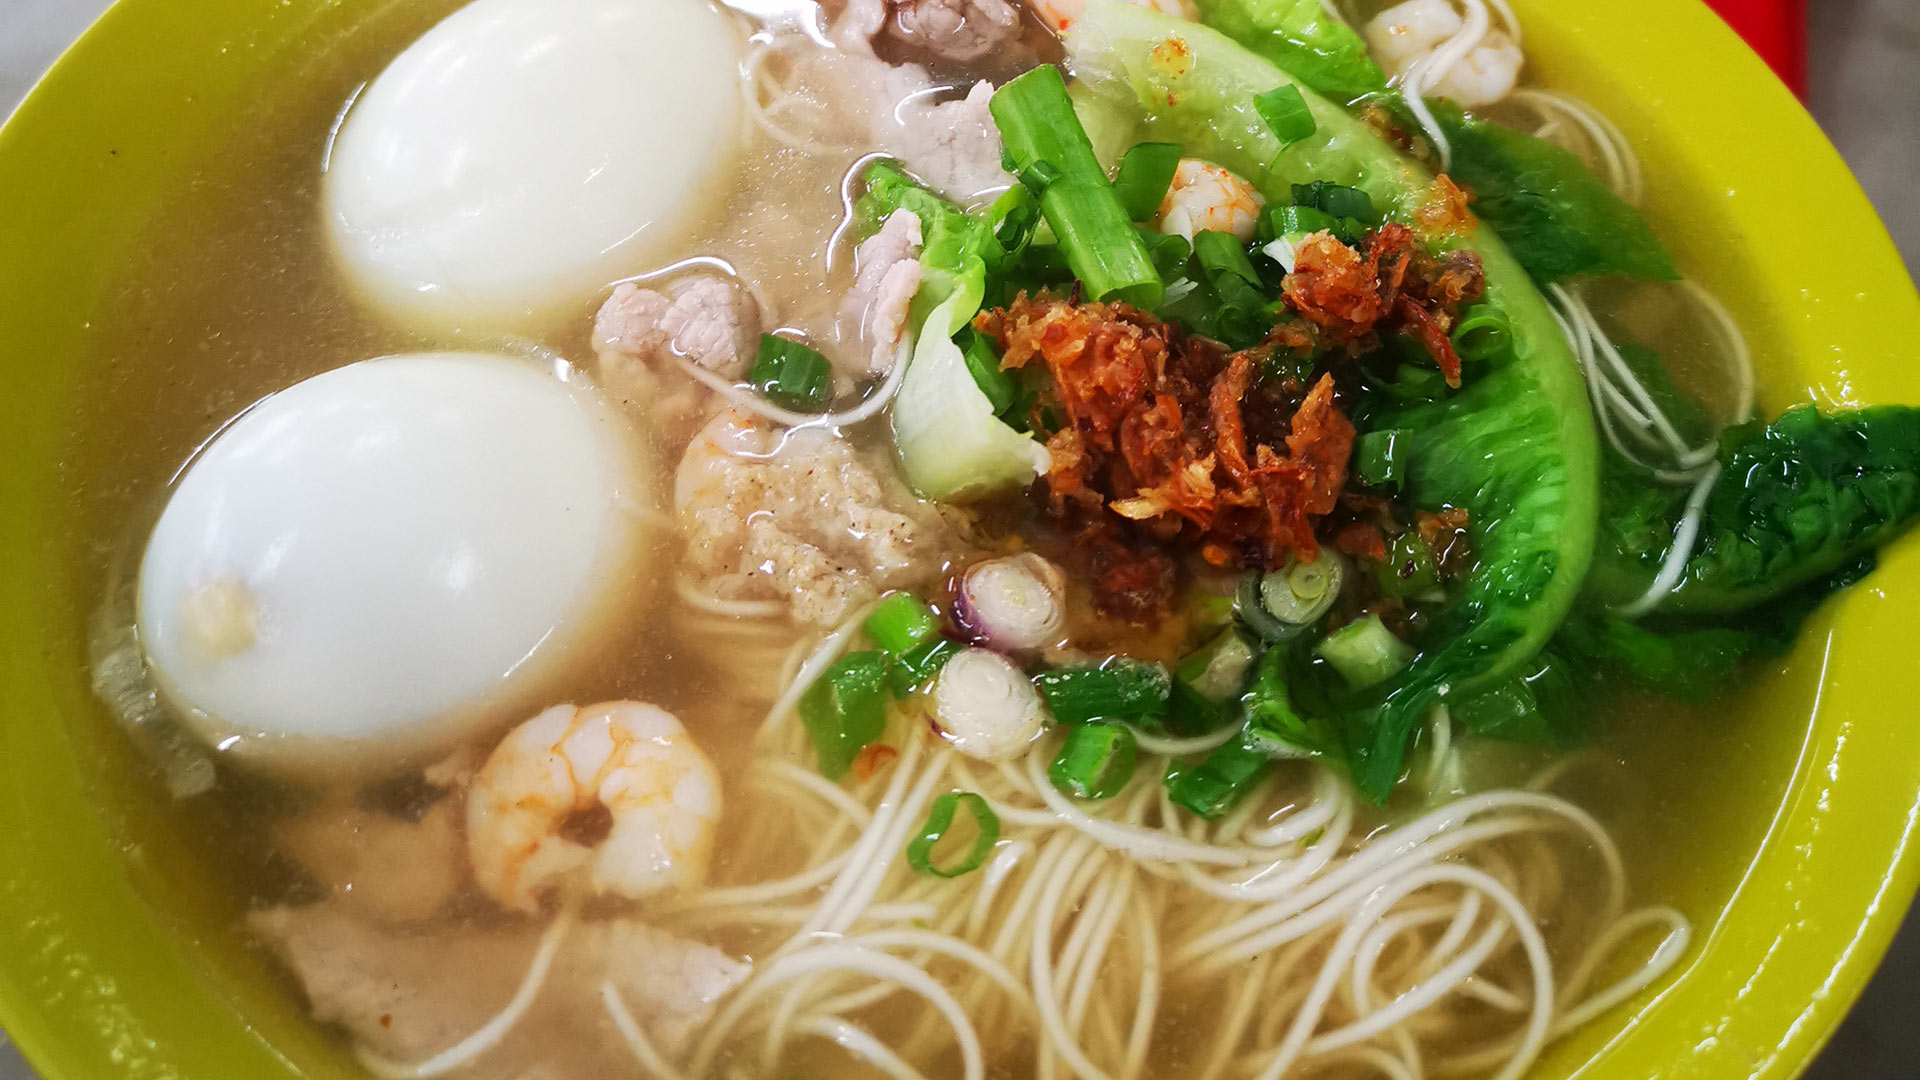 ロングライフヌードル 【长寿面】long life noodle soup（Longevity Birthday Noodles）